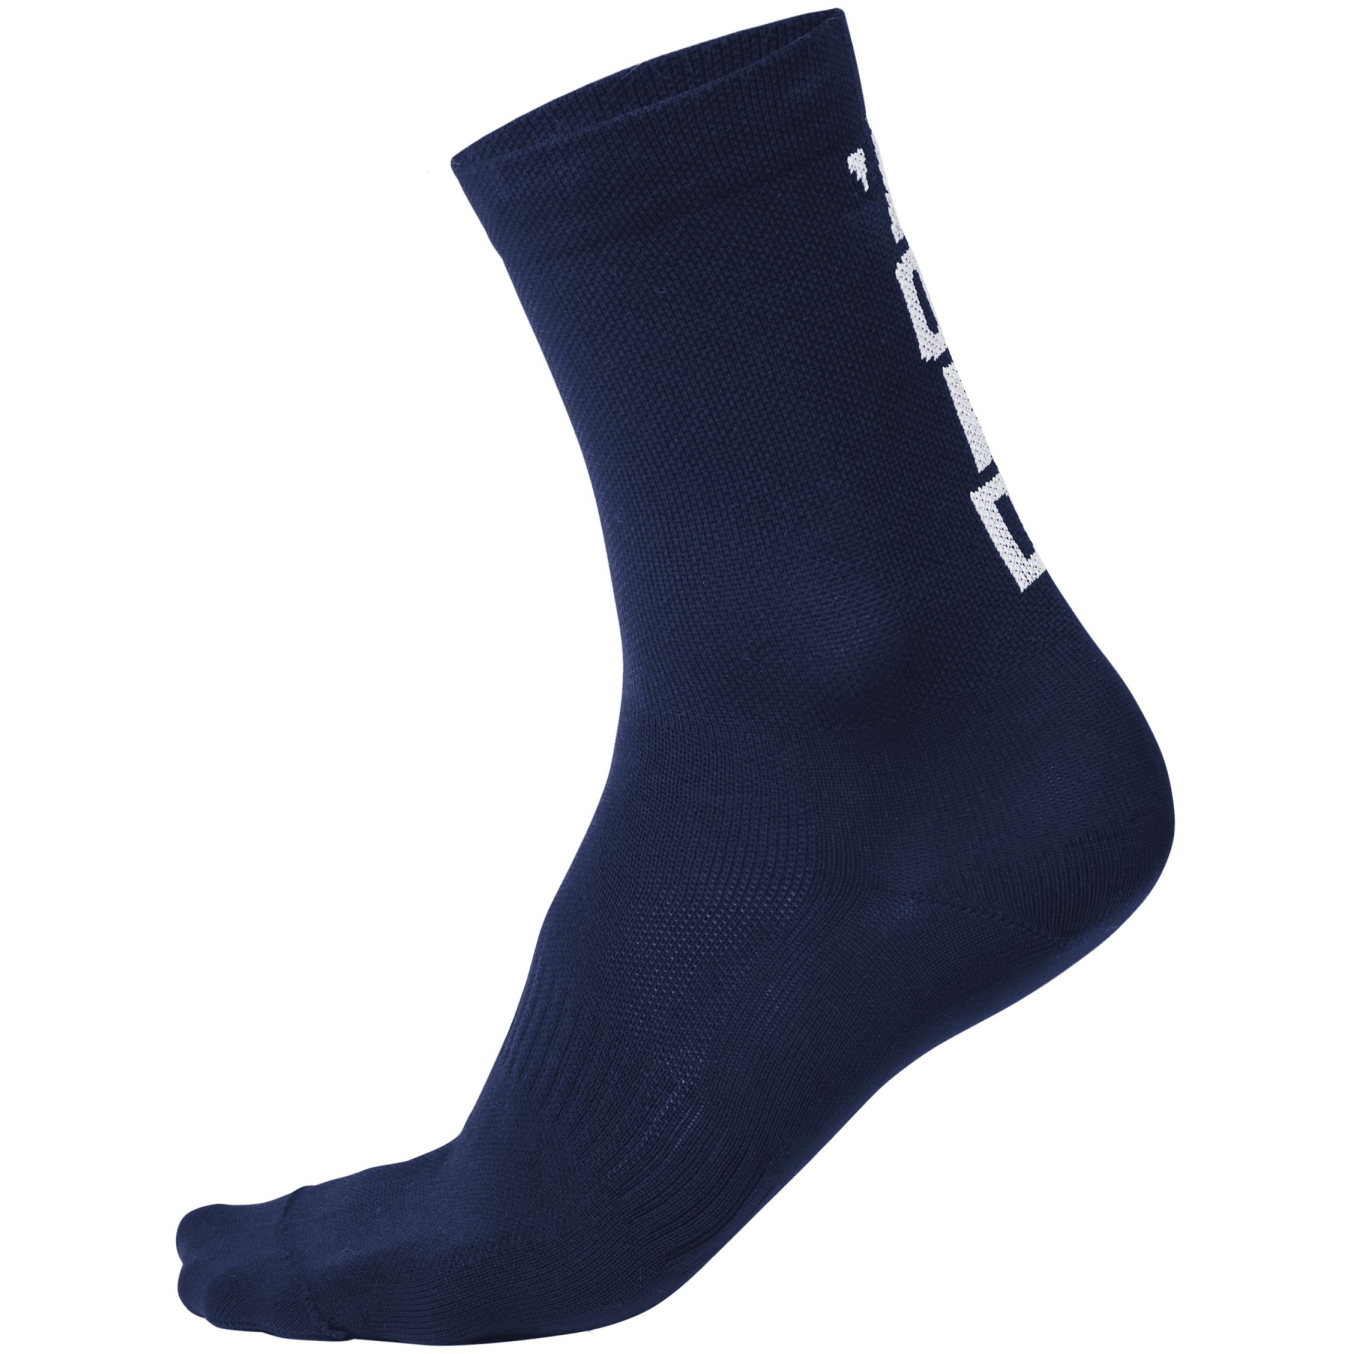 Productfoto van VOID Cycling Performance Sock 14 - Dark Blue